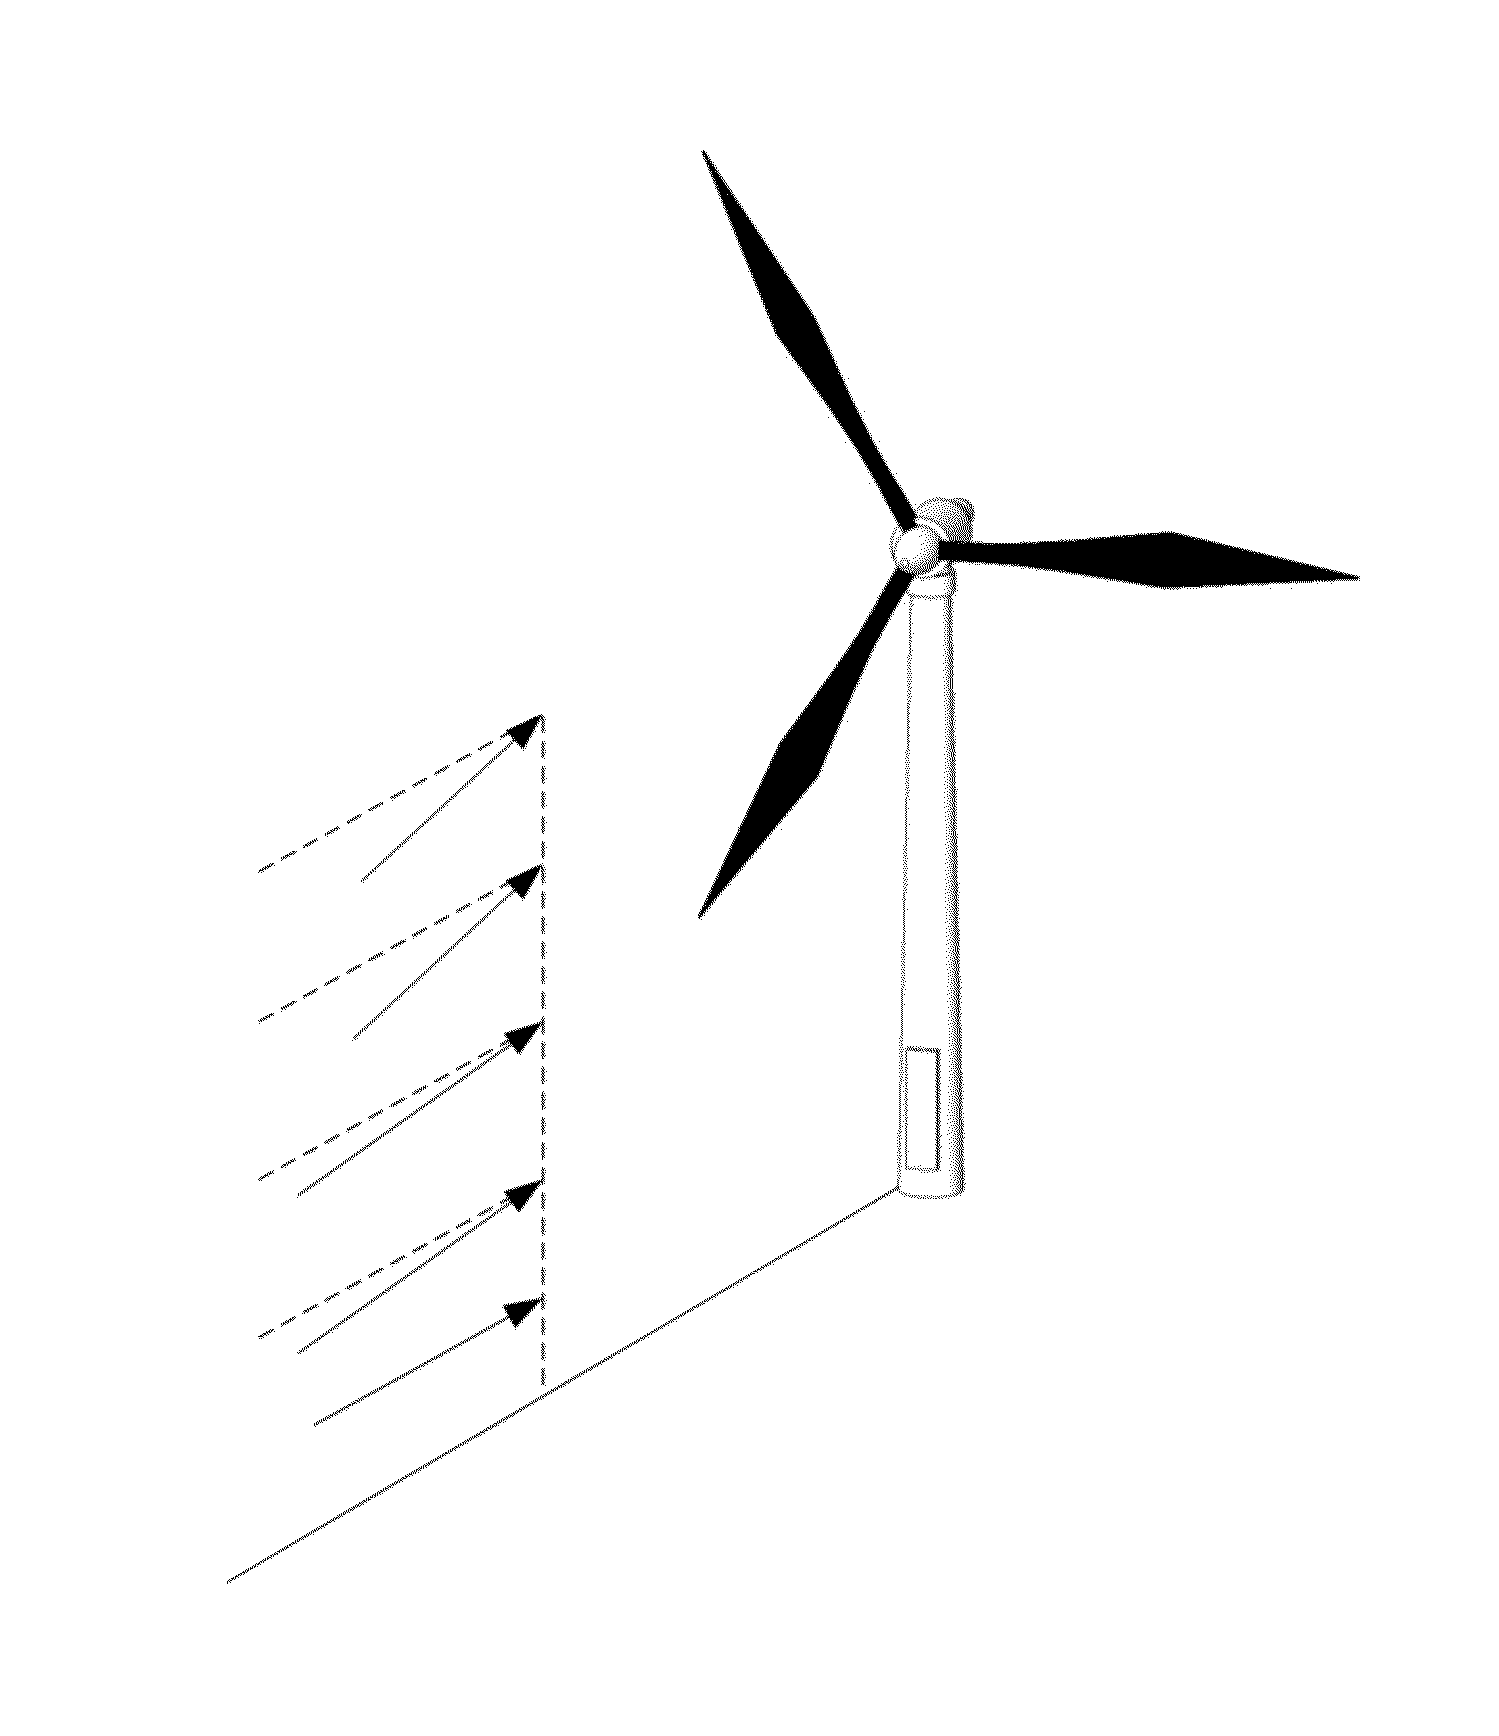 Method of operating a variable speed wind turbine